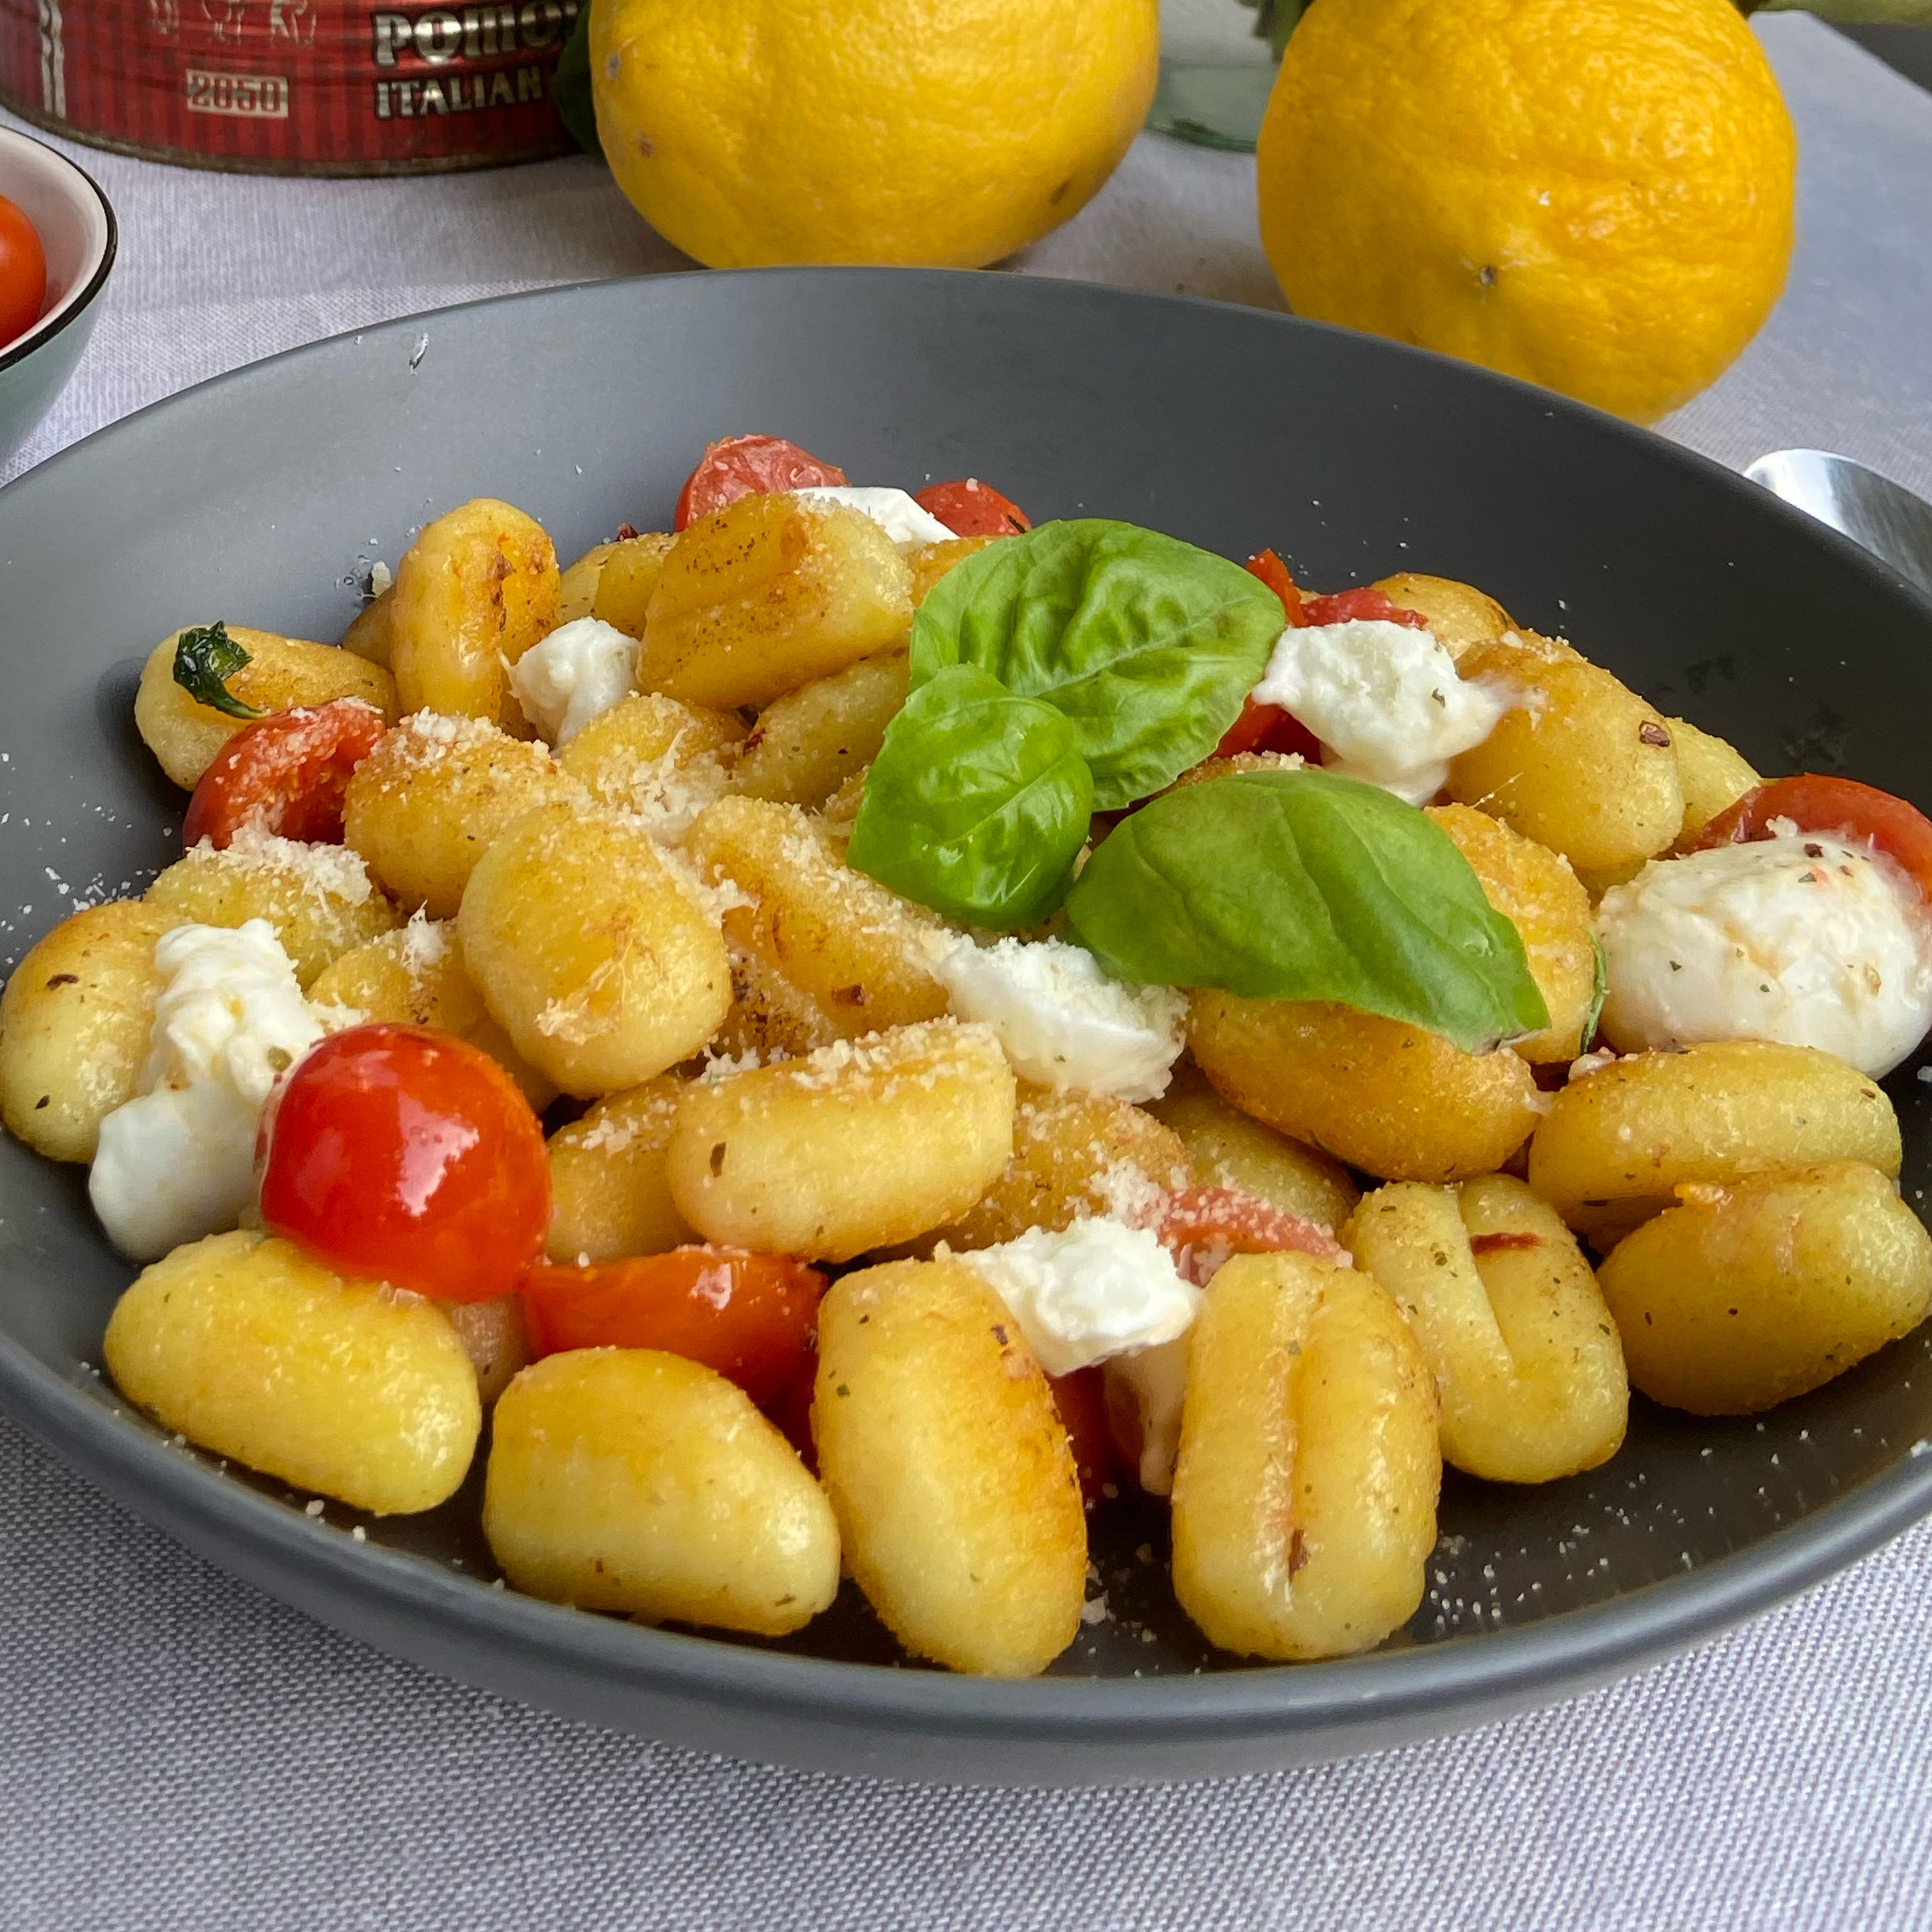 Zu guter letzt den Pfanneninhalt auf einem tiefen Teller platzieren, bei Bedarf mit etwas Parmesan bestreuen und mit etwas Basilikum garnieren. Guten Appetit! ☺️